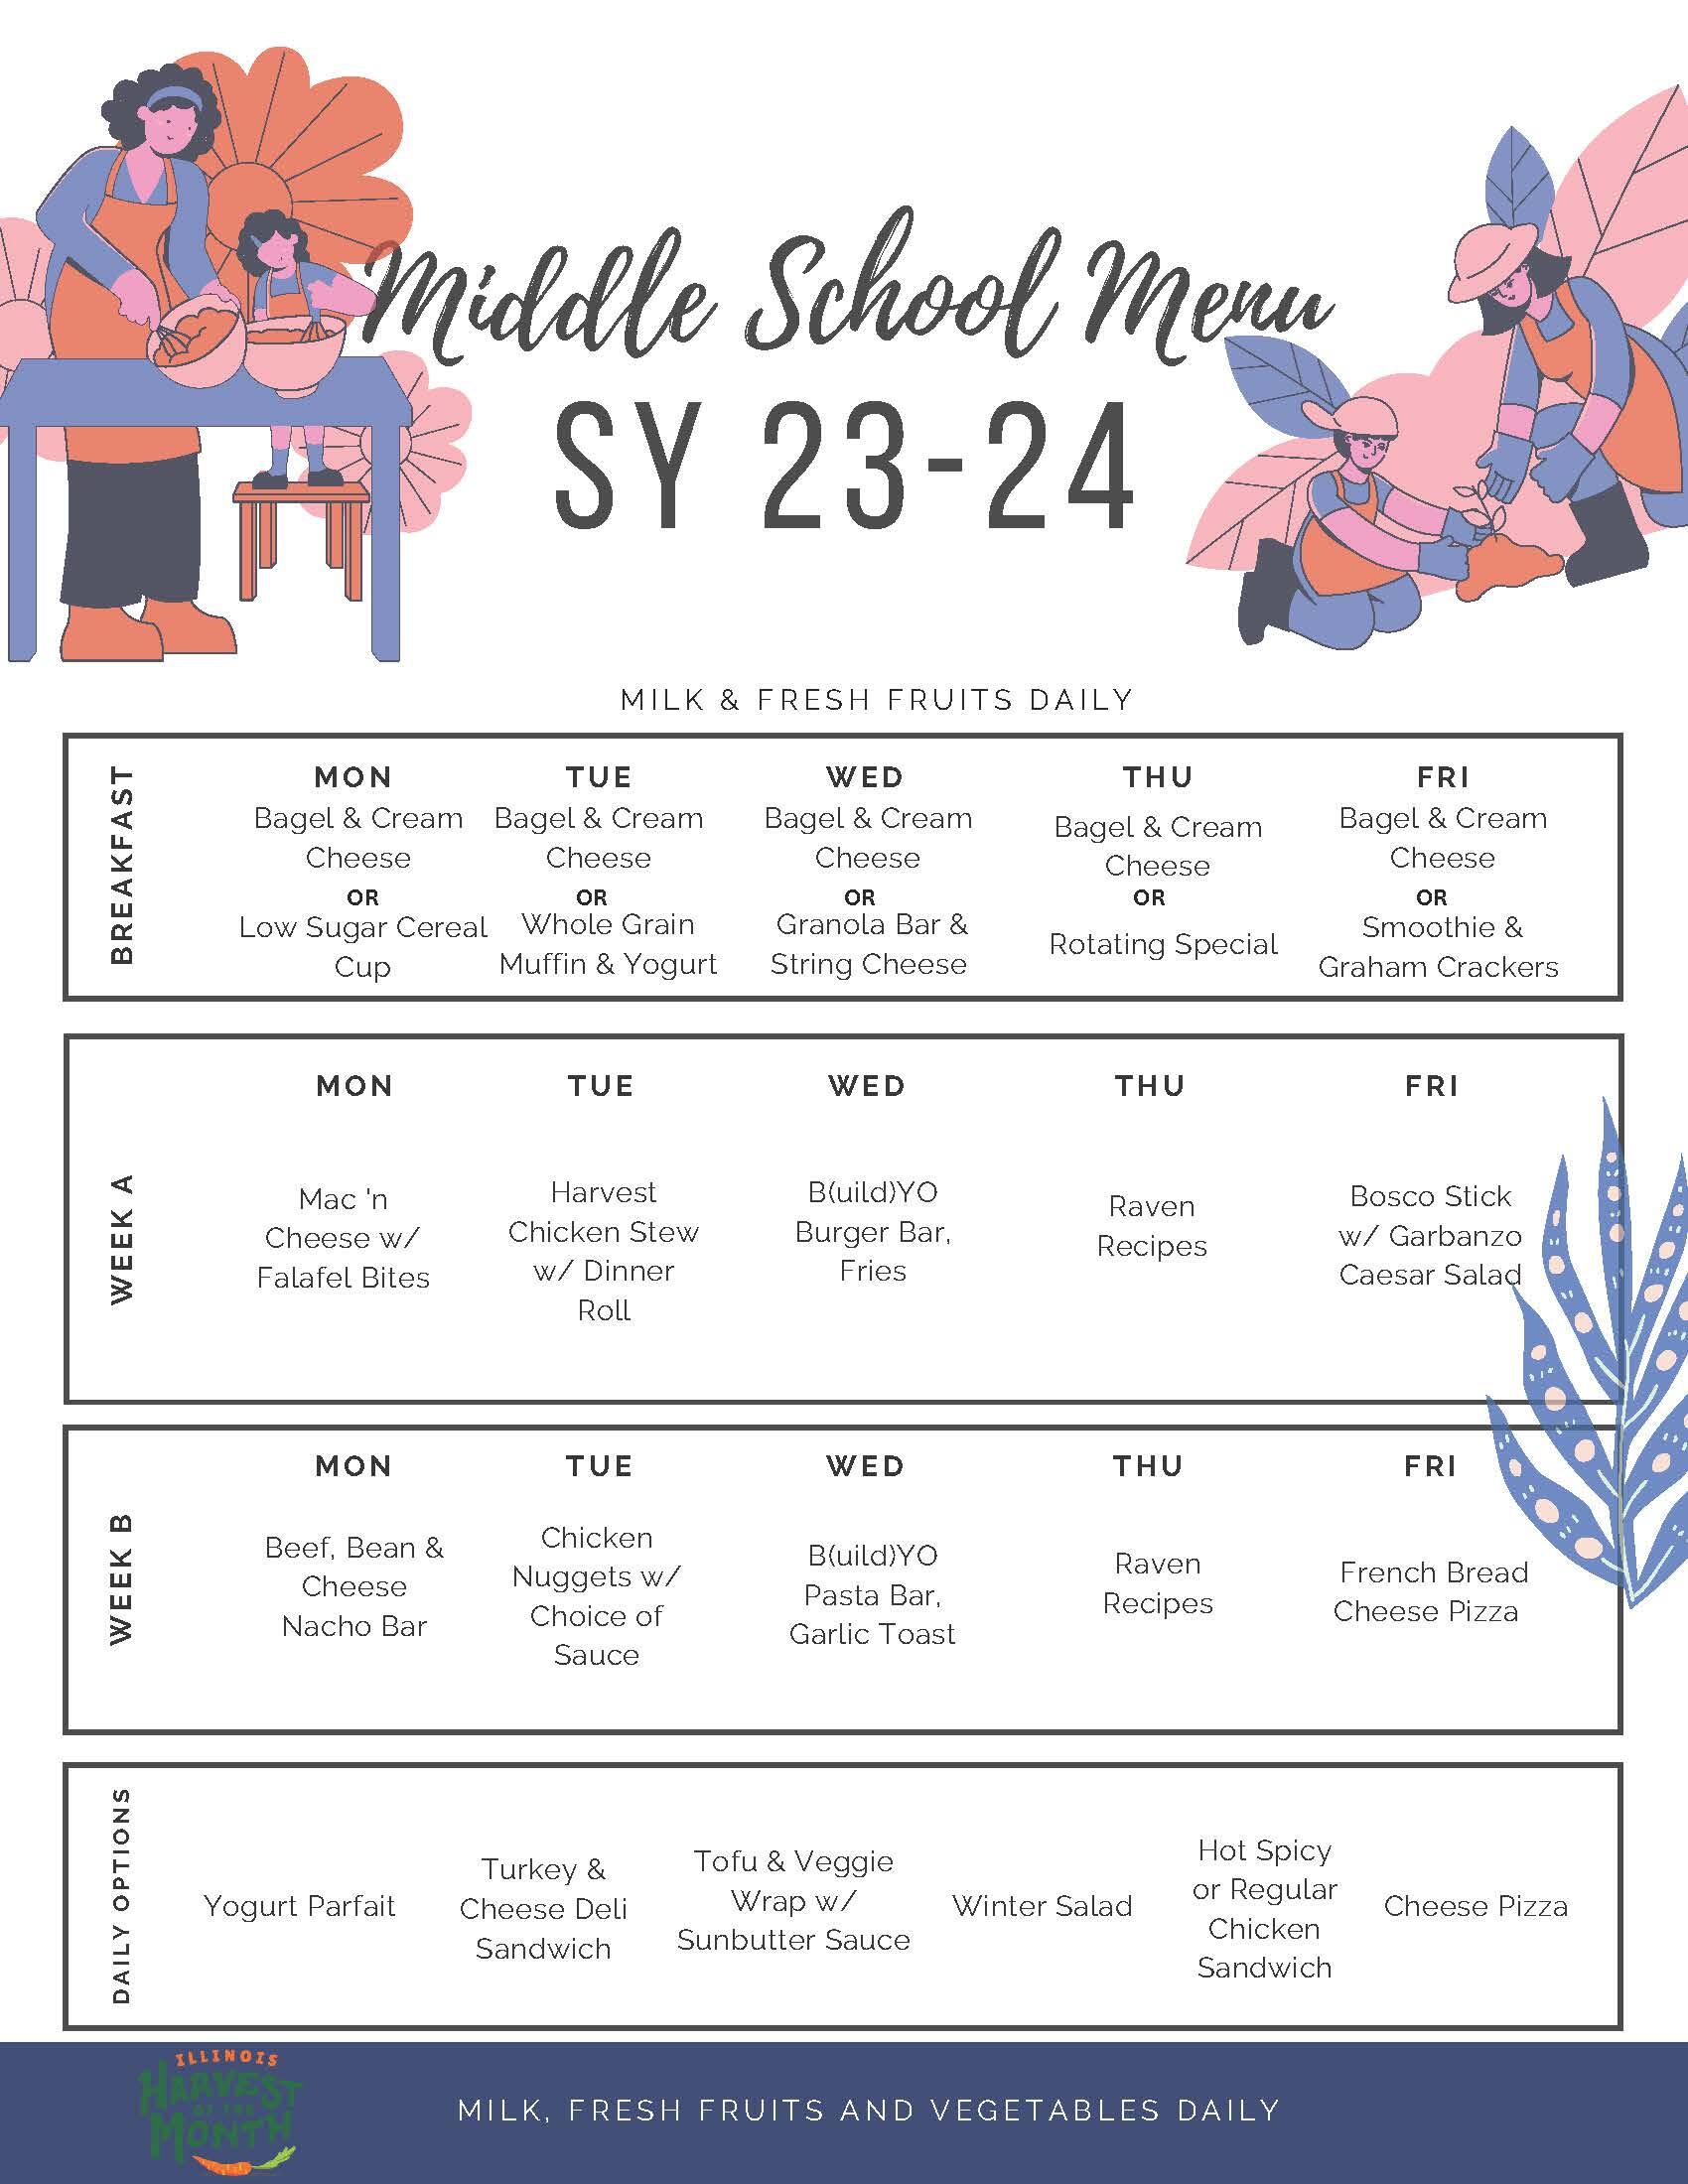 Lunch menu for 2022-2023 school year